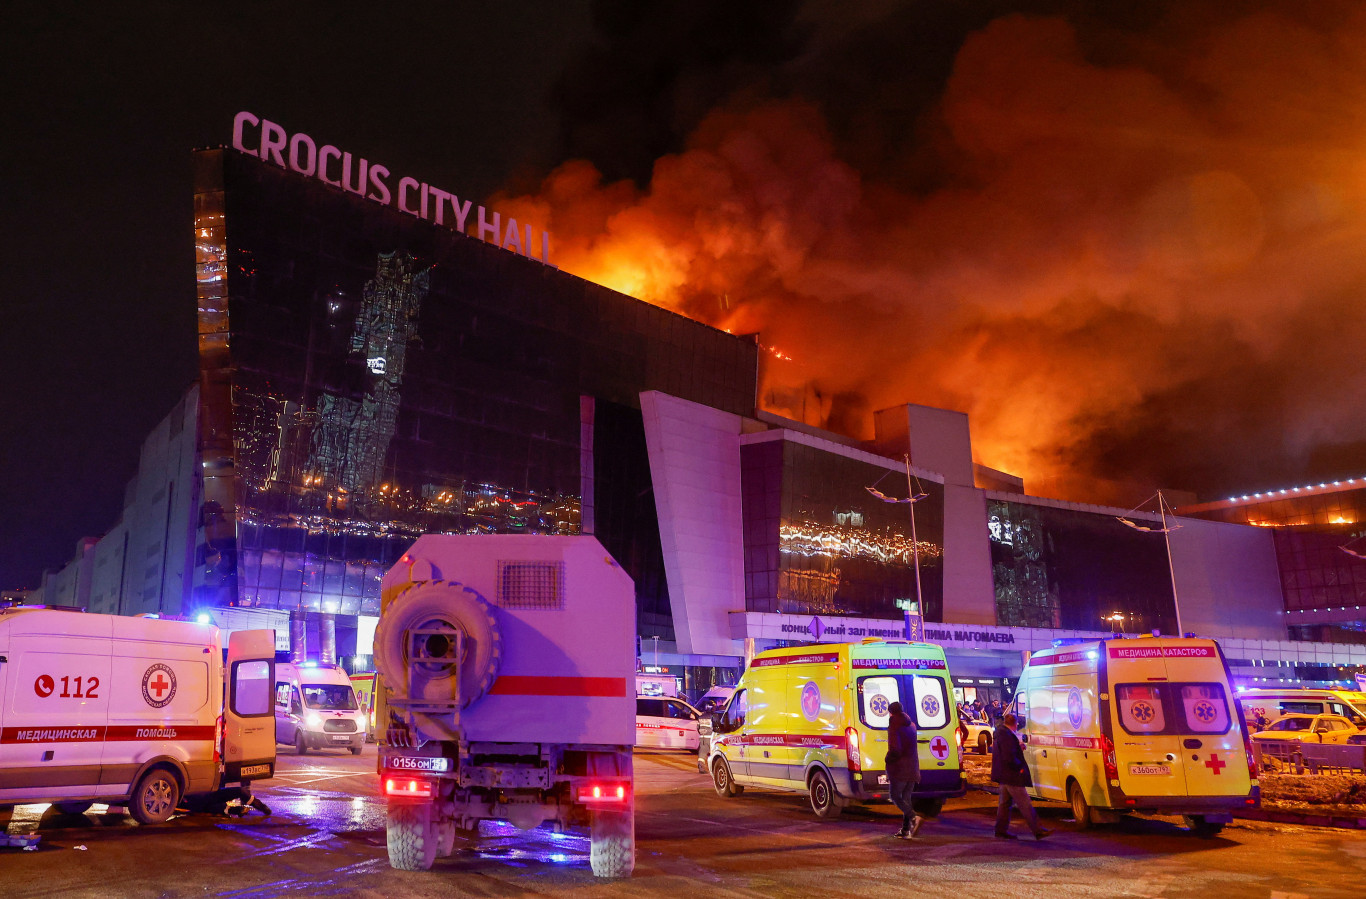 Több ország állampolgárai is részt vettek az oroszországi koncertteremben történt terrortámadás megszervezésében